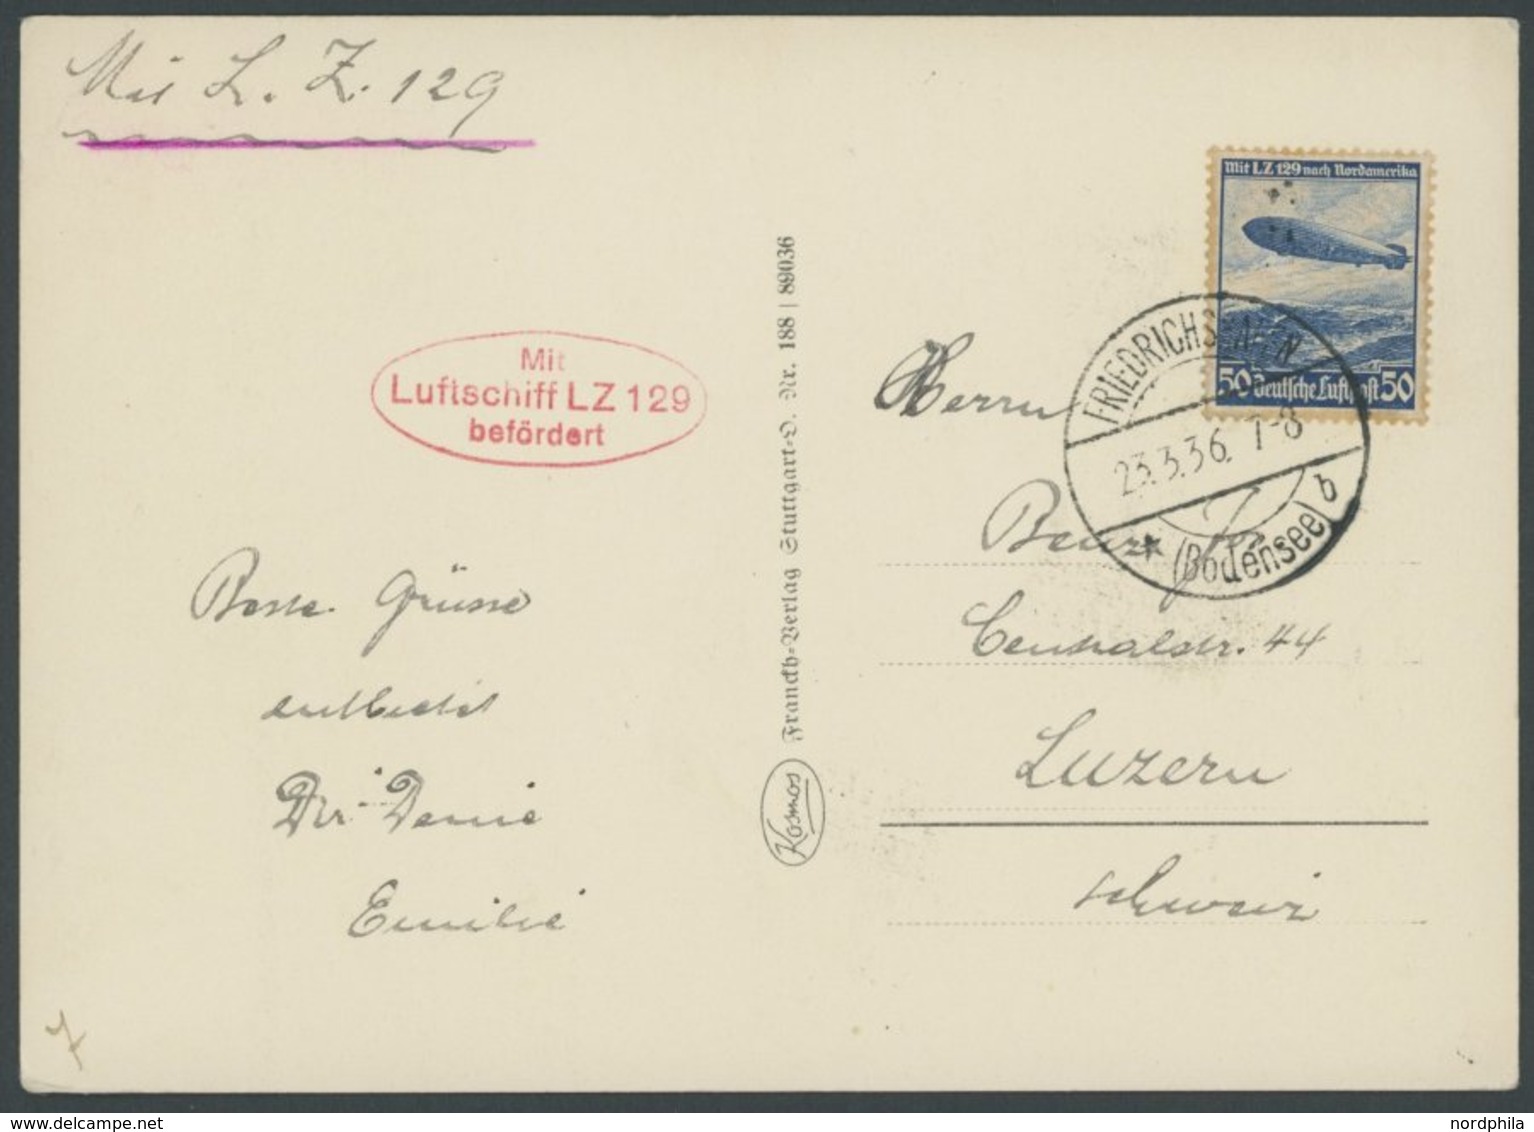 ZEPPELINPOST 401Ab BRIEF, 1936, 1. Postfahrt Hindenburg, Auflieferung Friedrichshafen, Frankiert Mit 50 Pf. Zeppelinmark - Airmail & Zeppelin